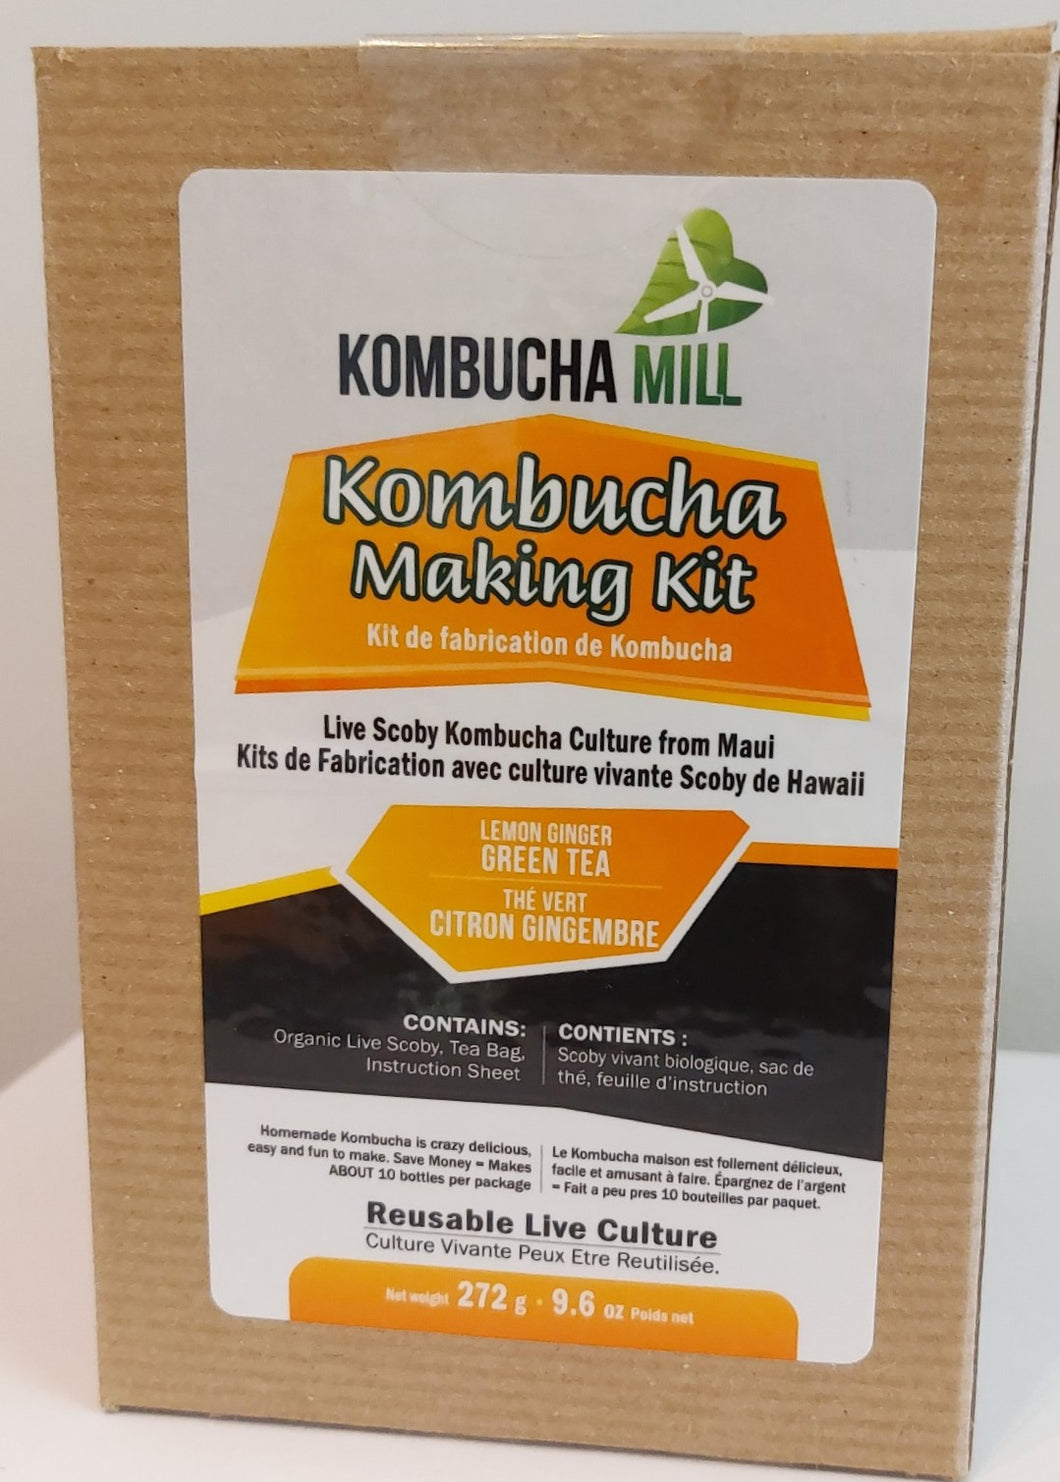 Ketopia Foods: Organic Kombucha Mill, Green Tea Kit